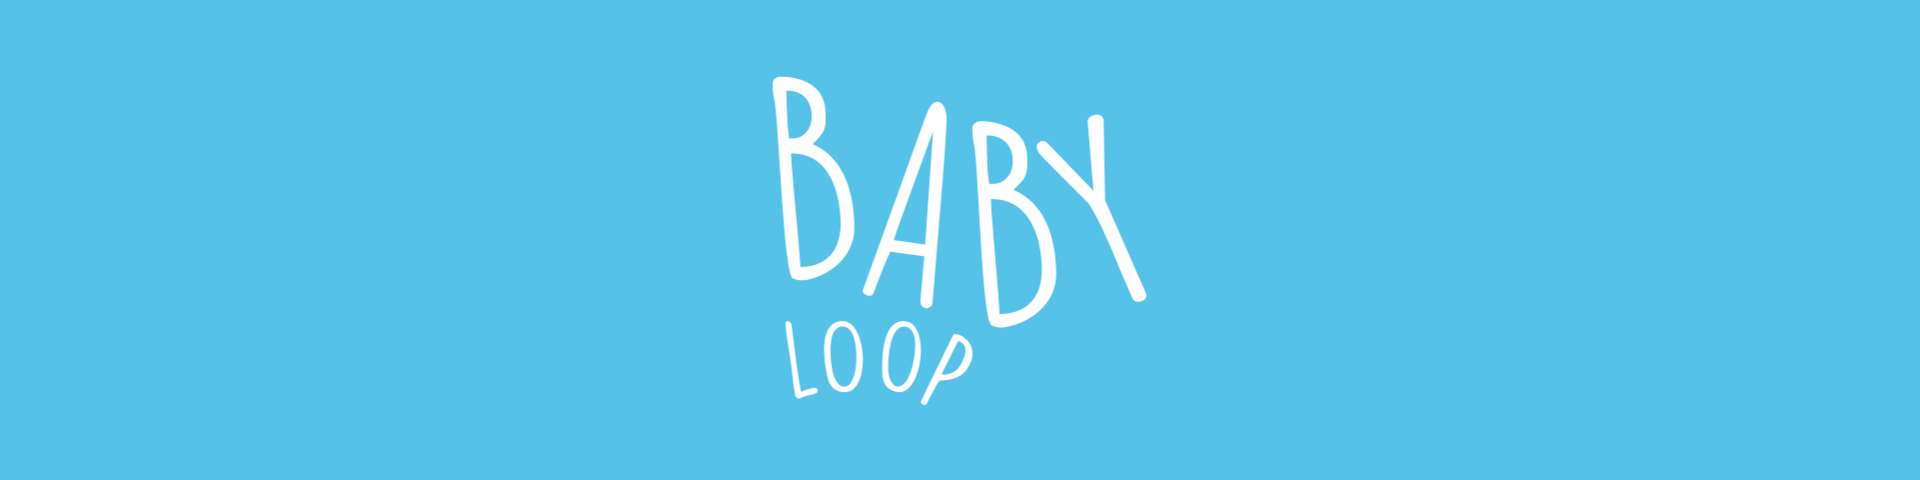 BabyLoop